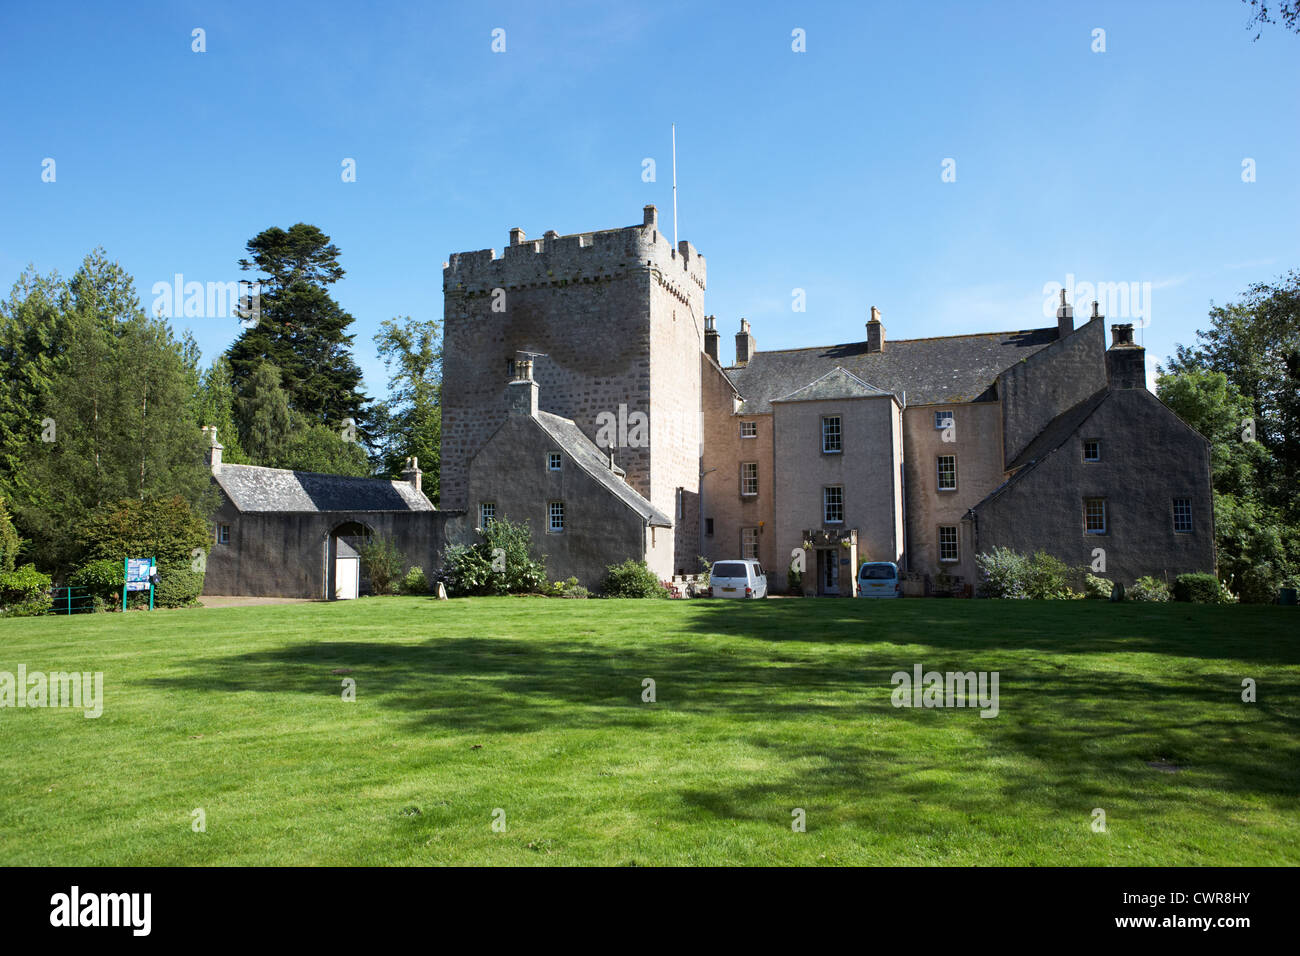 Kilravock castle highland scotland uk Stock Photo